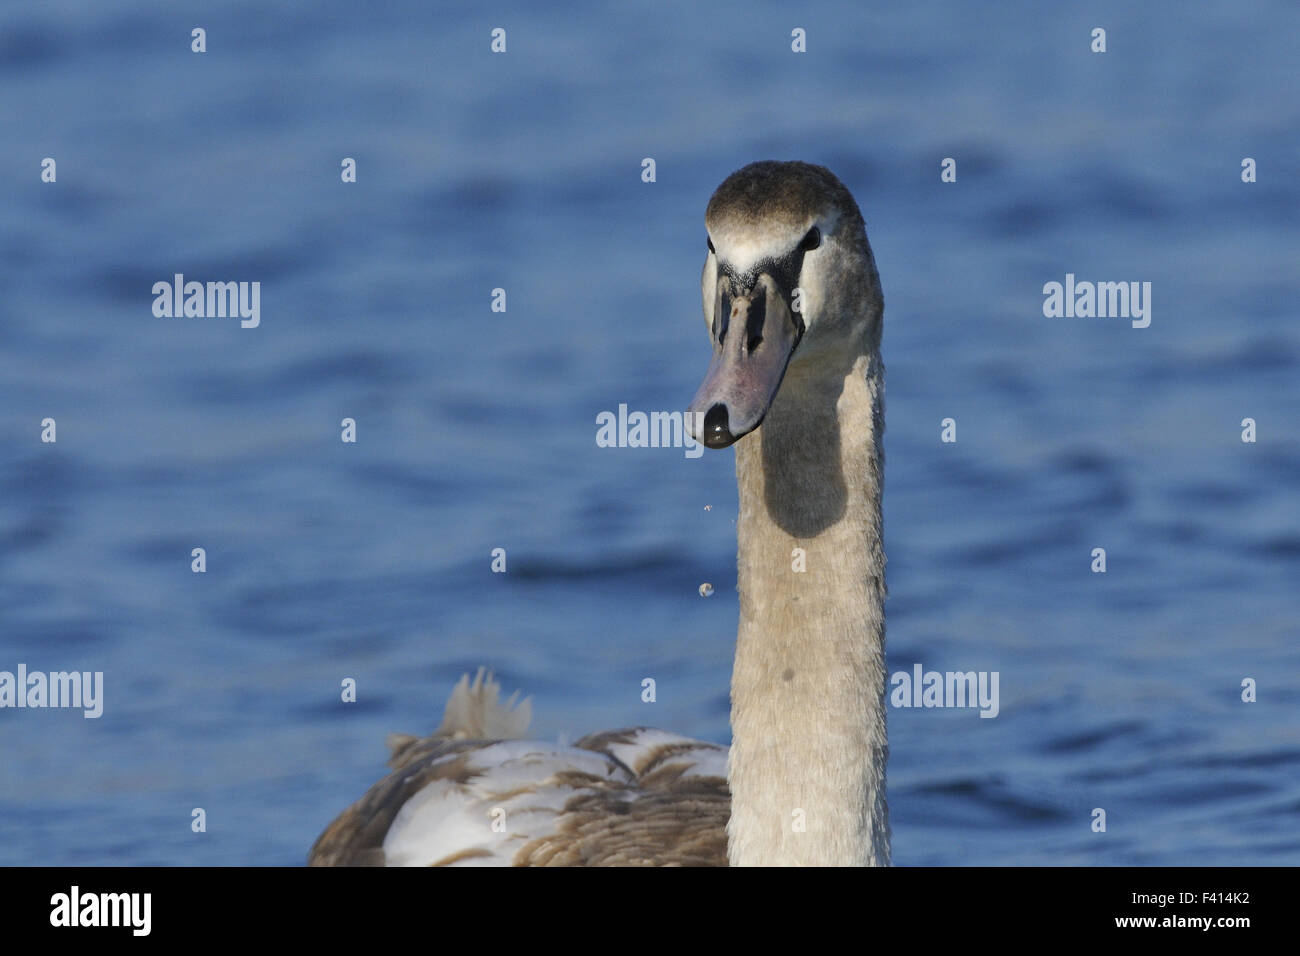 Mute swan Stock Photo